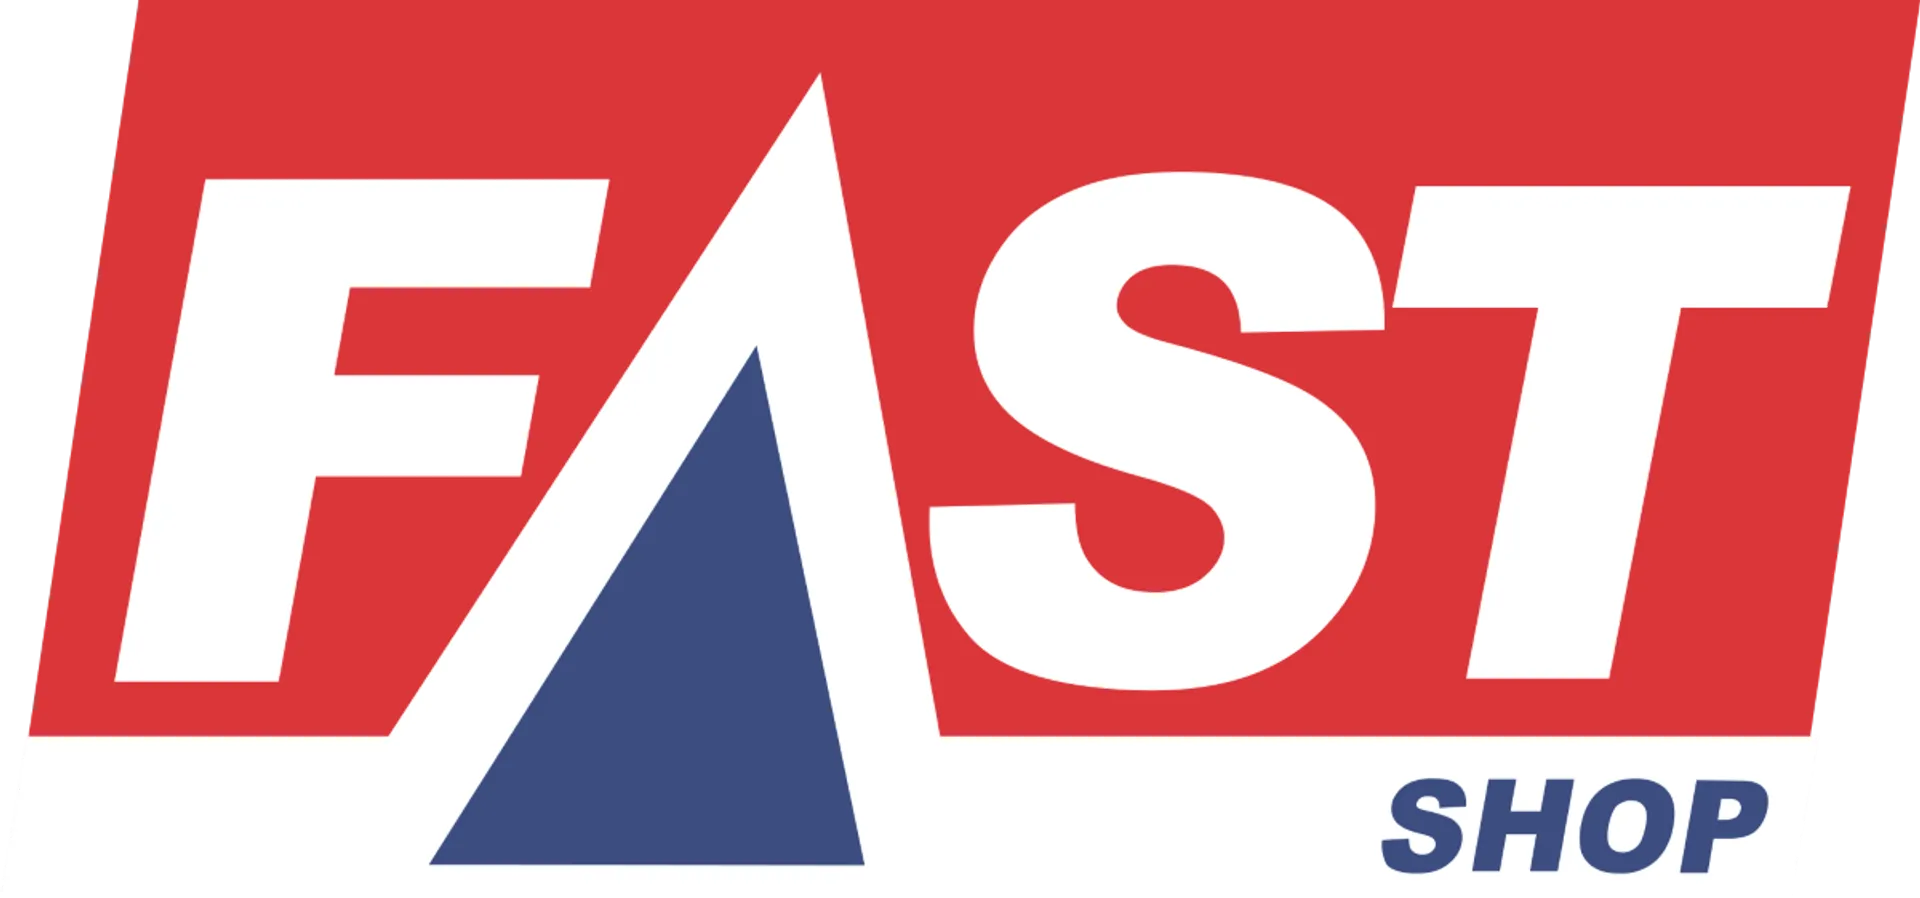 FAST SHOP logo